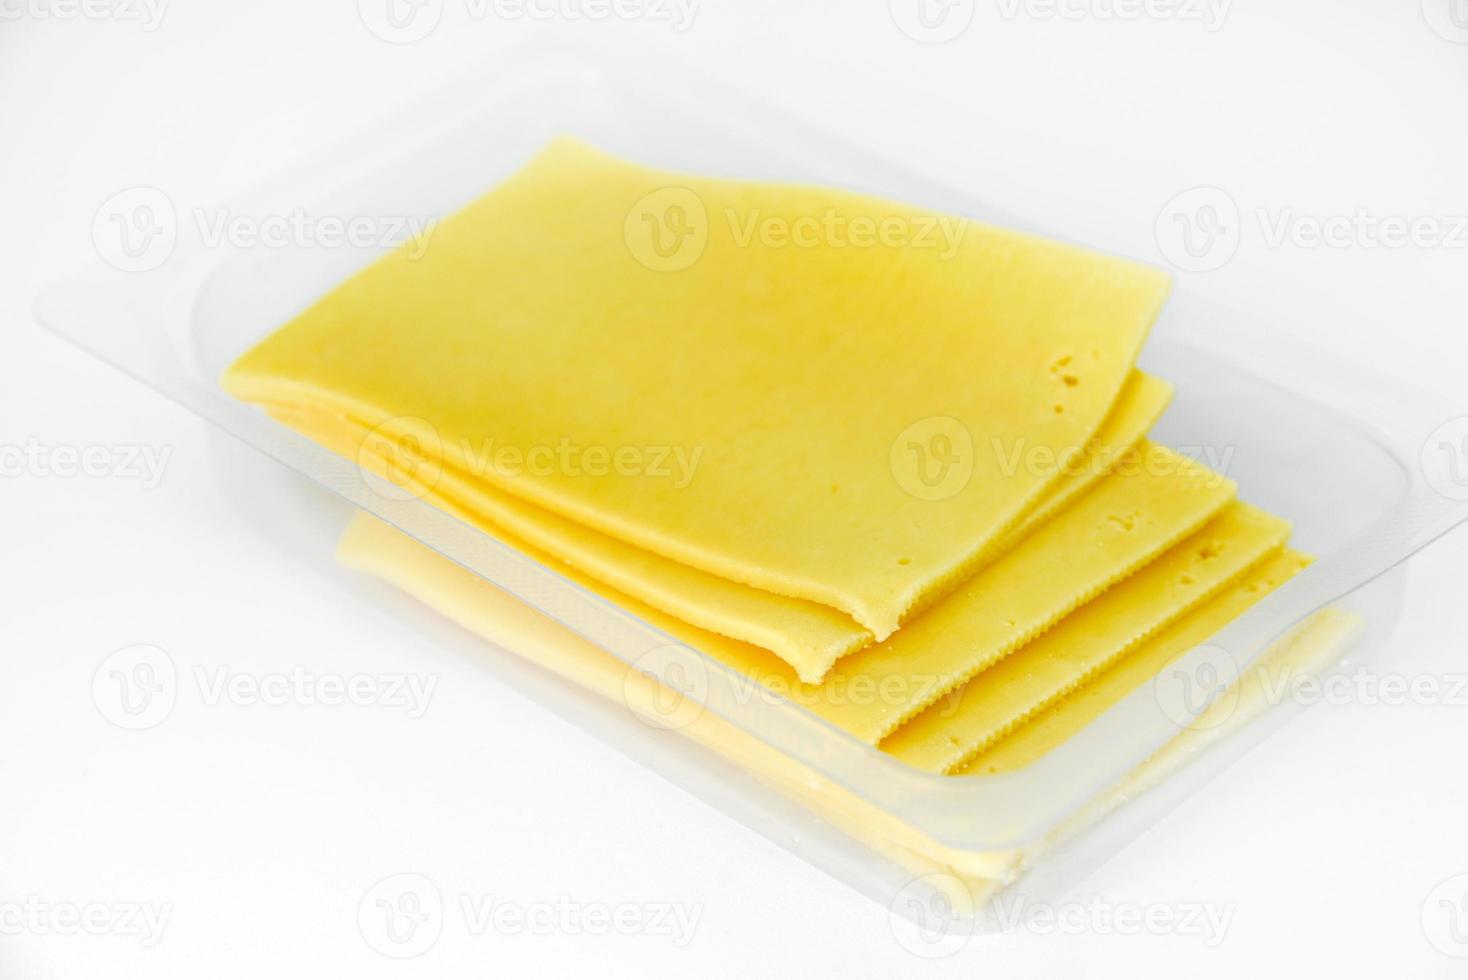 fines tranches de fromage sur un support en plastique. délicieux fromage jaune haché. fromage dans un emballage du magasin. photo